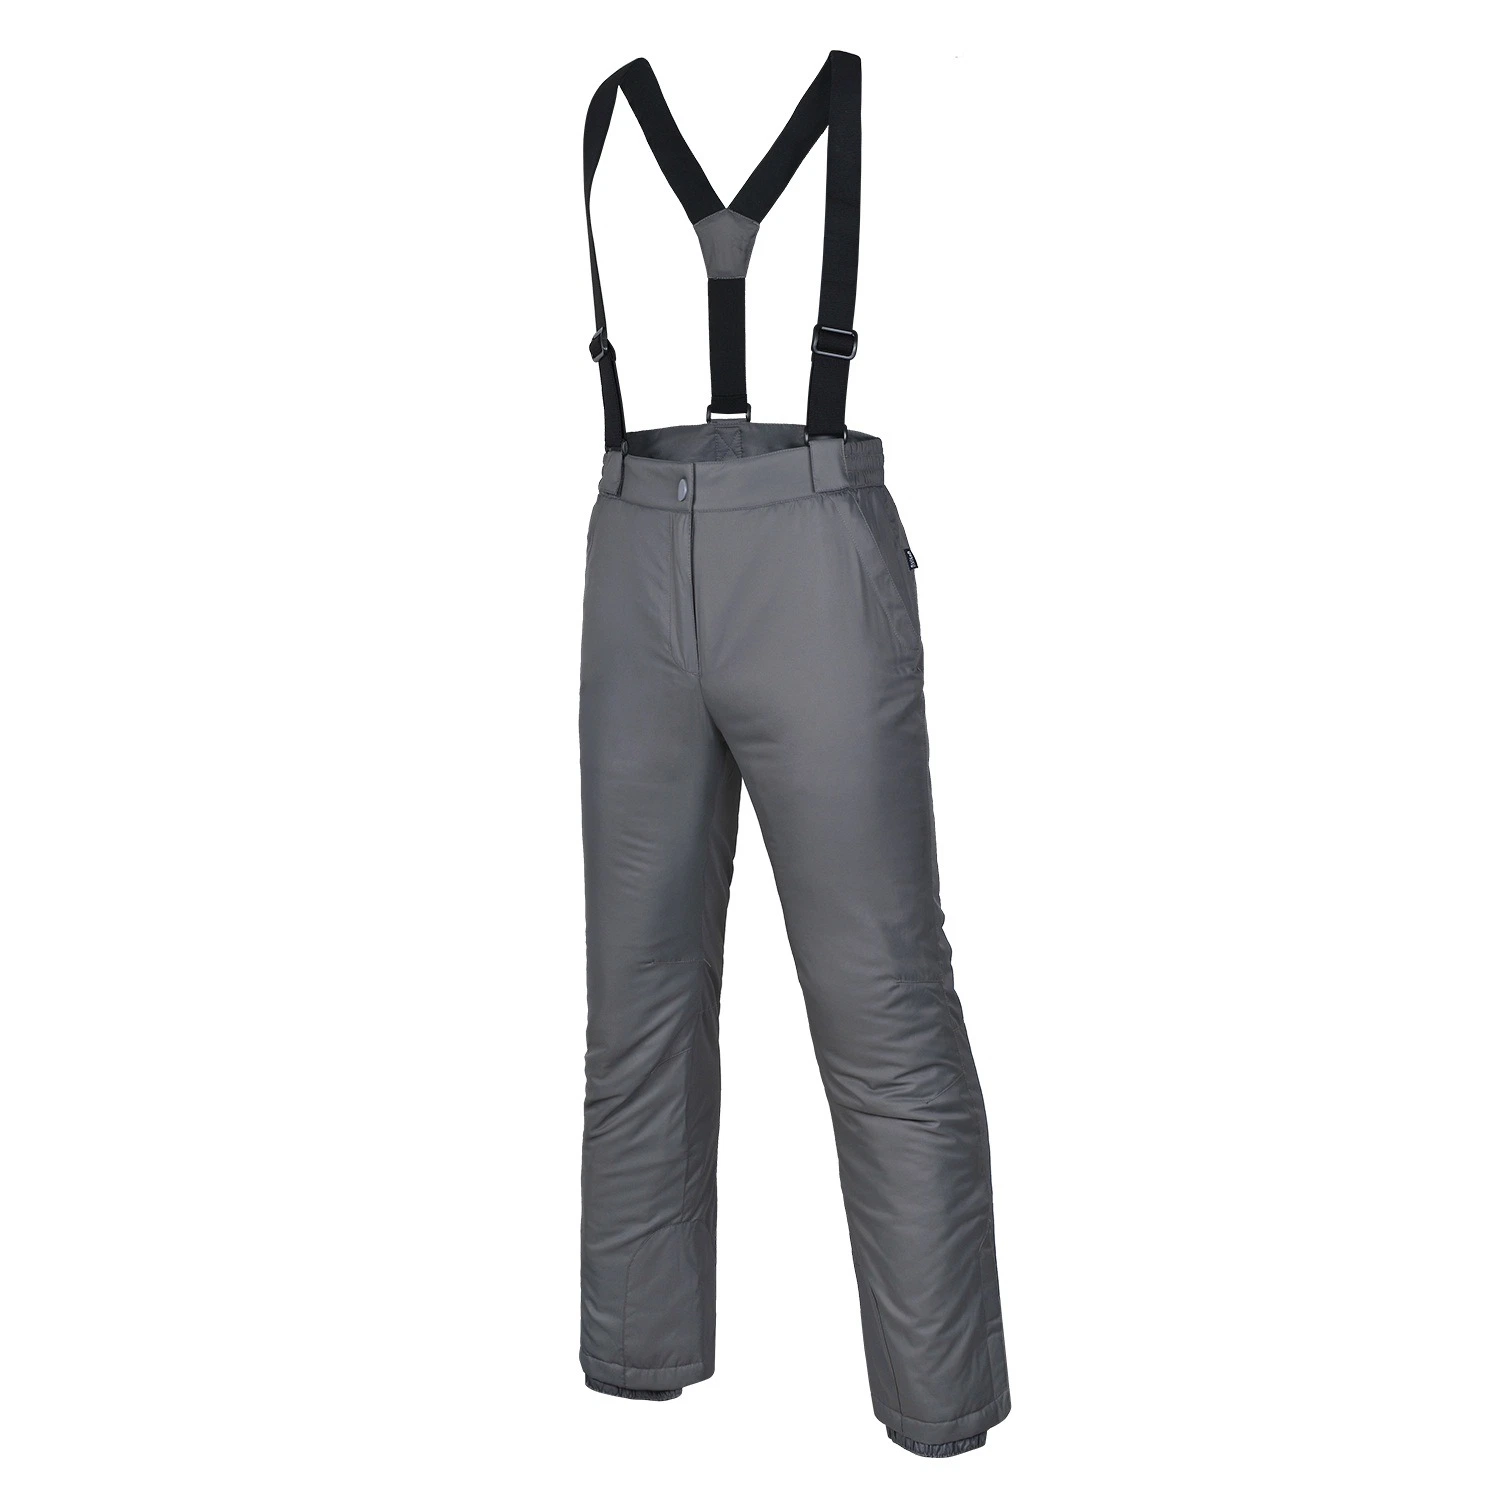 Worker Wear Ski Hose Outdoor Wasserdicht/Atmungsaktiv/Winddicht Strapshose Grau Hose Lätzchen Hose